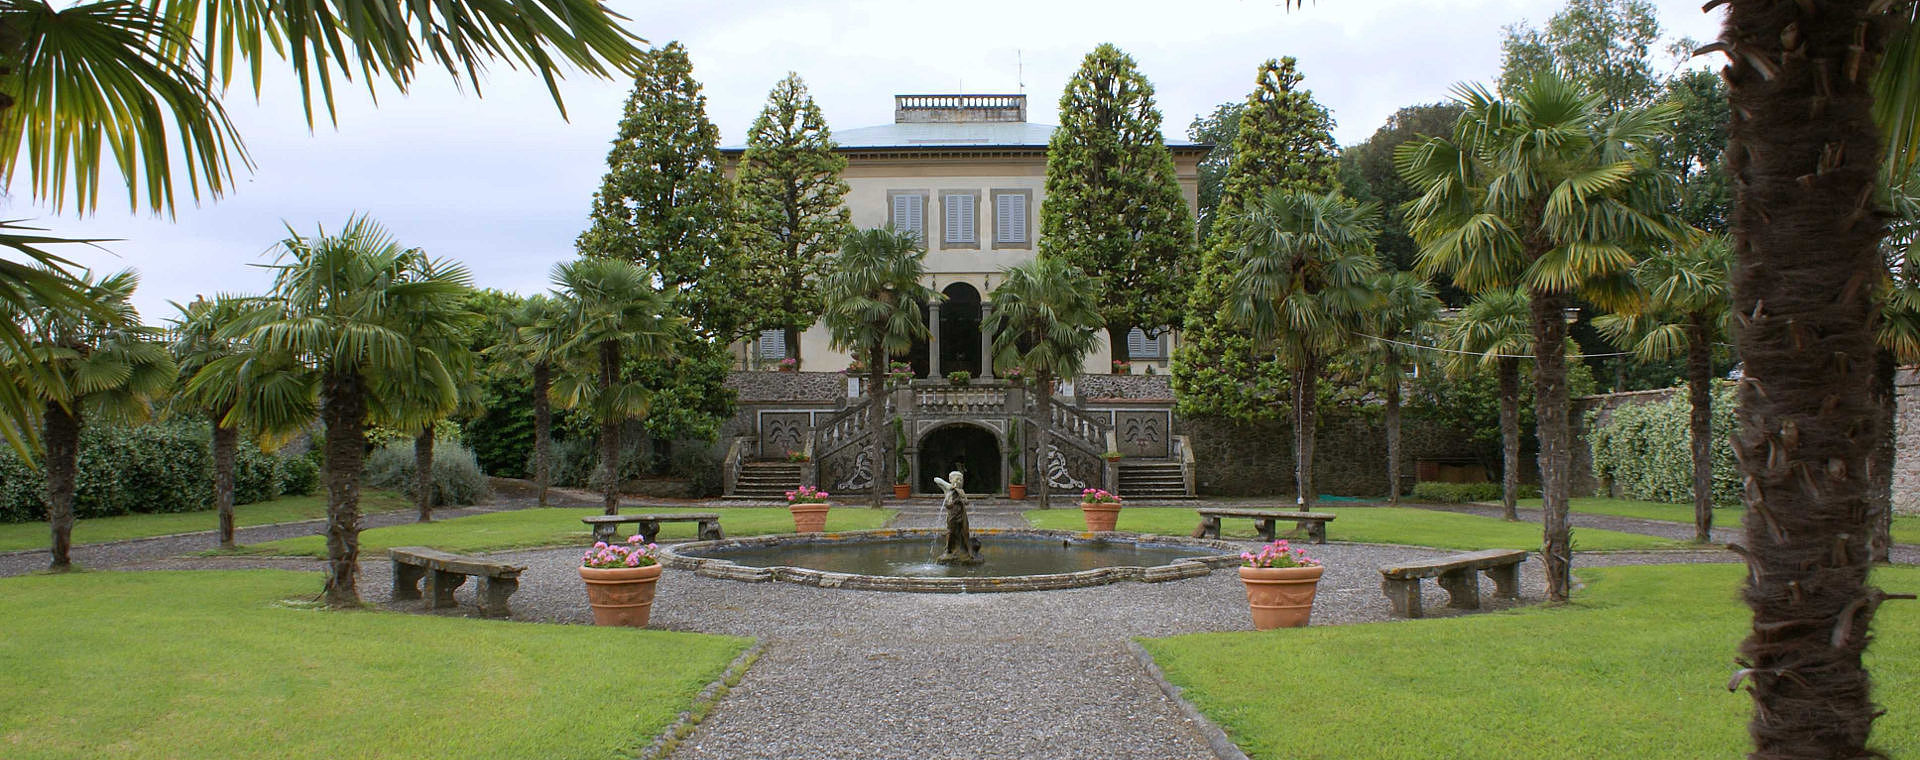 Villa Lazzareschi retro con giardino